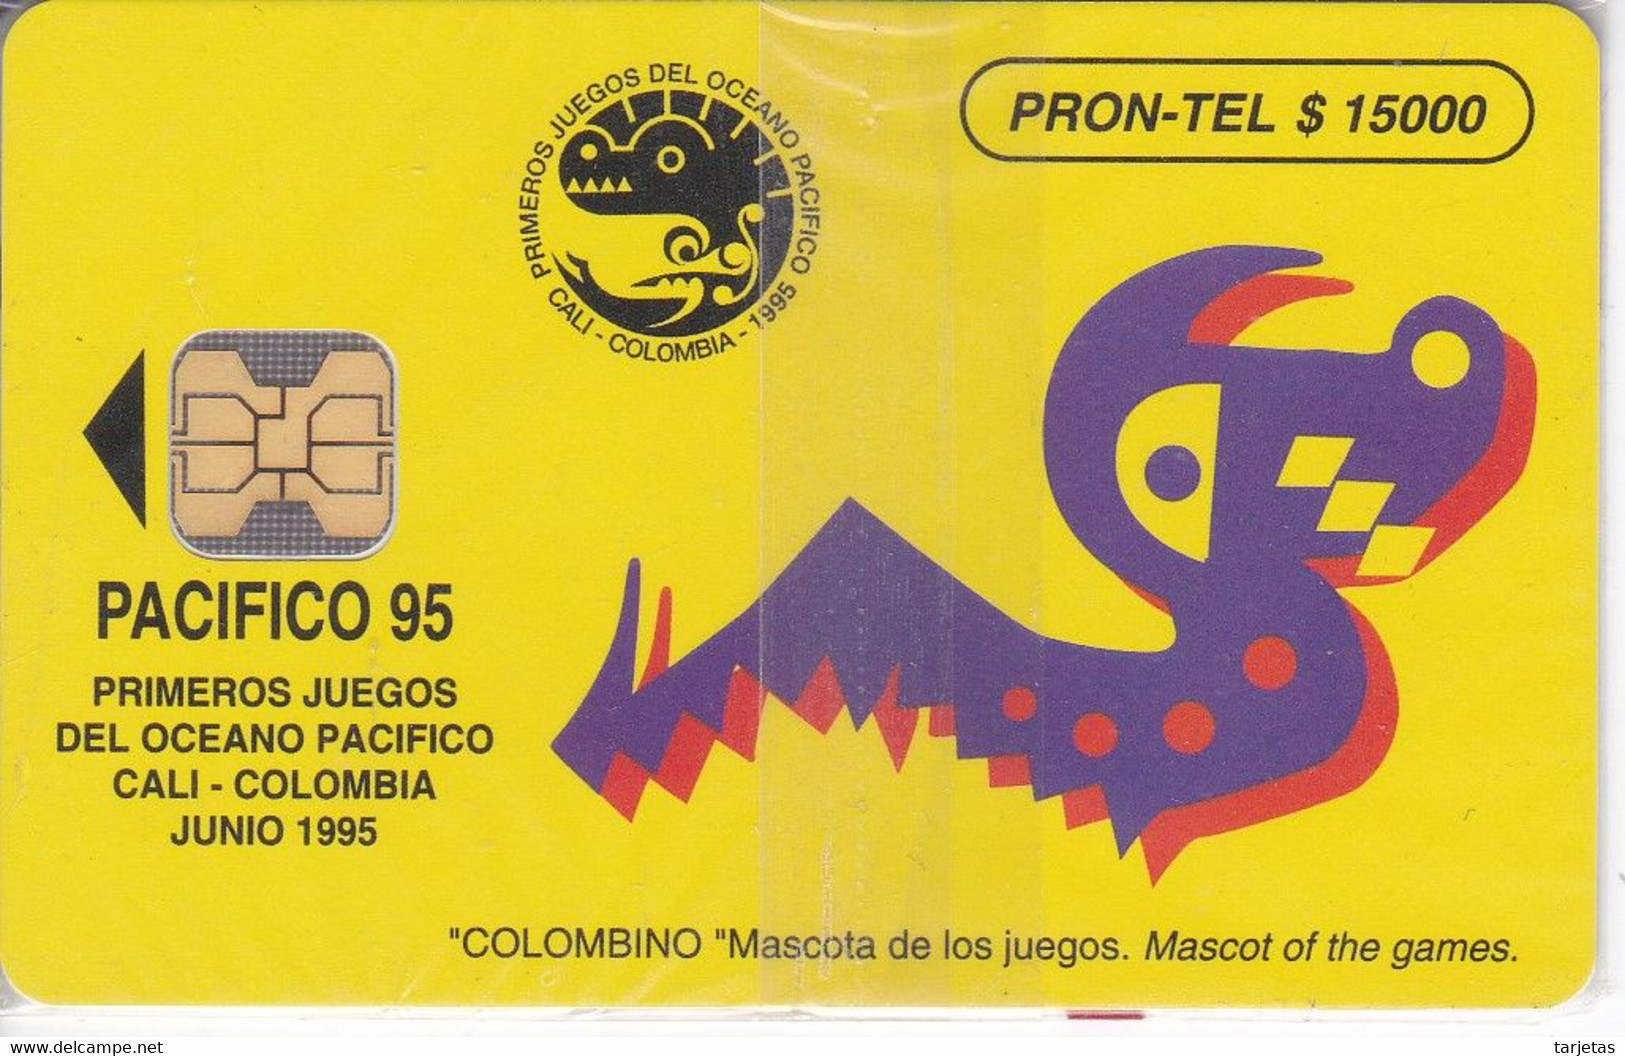 TARJETA DE COLOMBIA DE PRONTEL $15000 CALI PACIFICO 95 TIRADA 10000 NUEVA EN BLISTER - Colombie